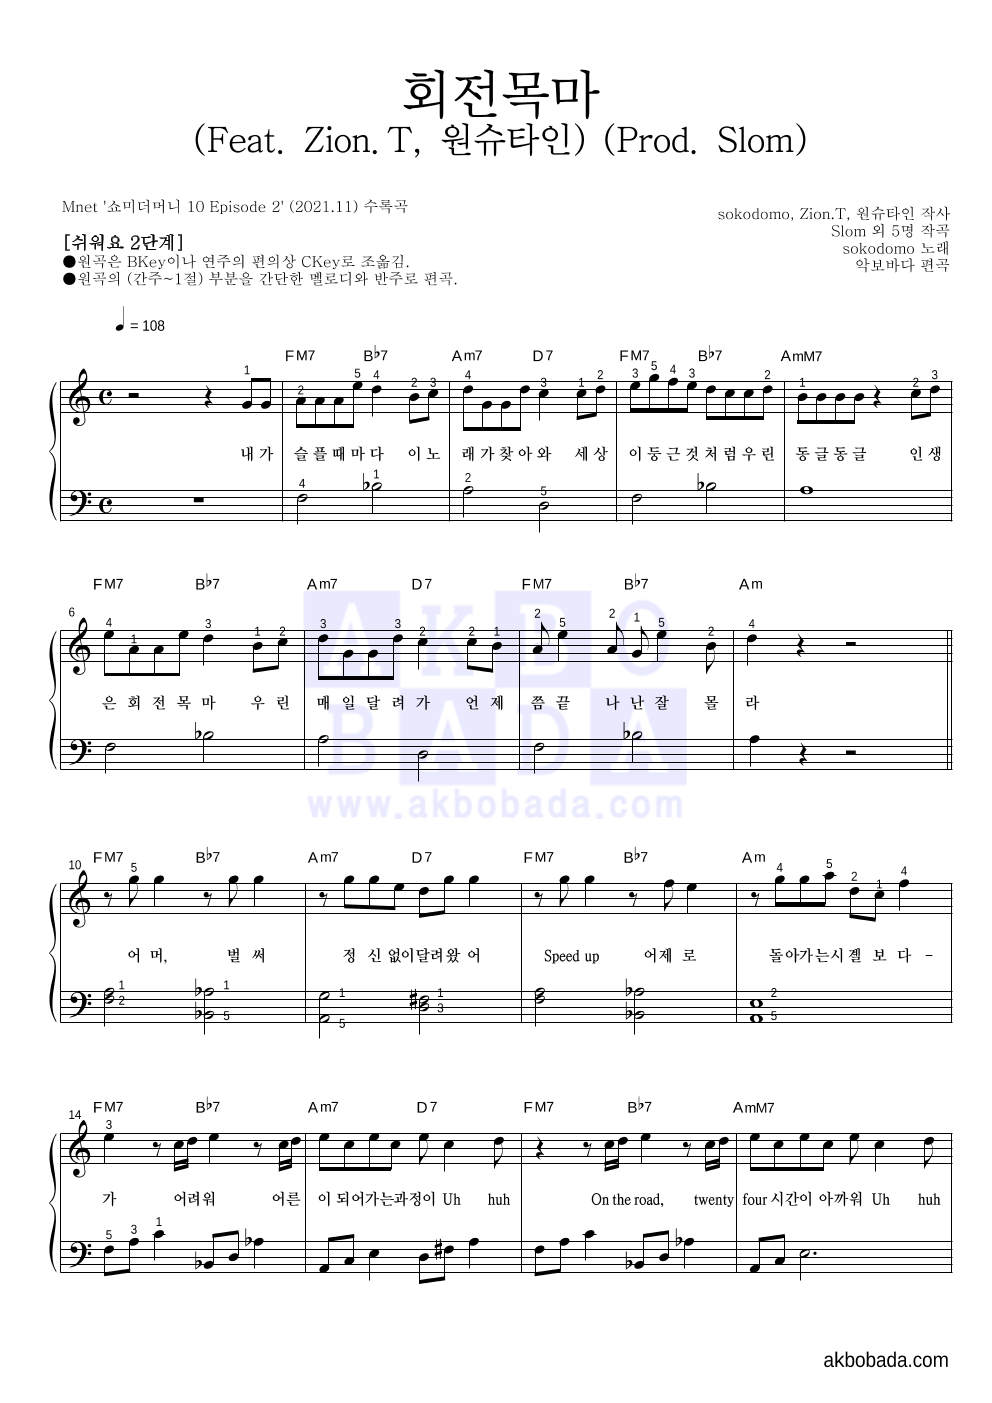 sokodomo - 회전목마 (Feat. Zion.T, 원슈타인) (Prod. Slom) 피아노2단-쉬워요 악보 